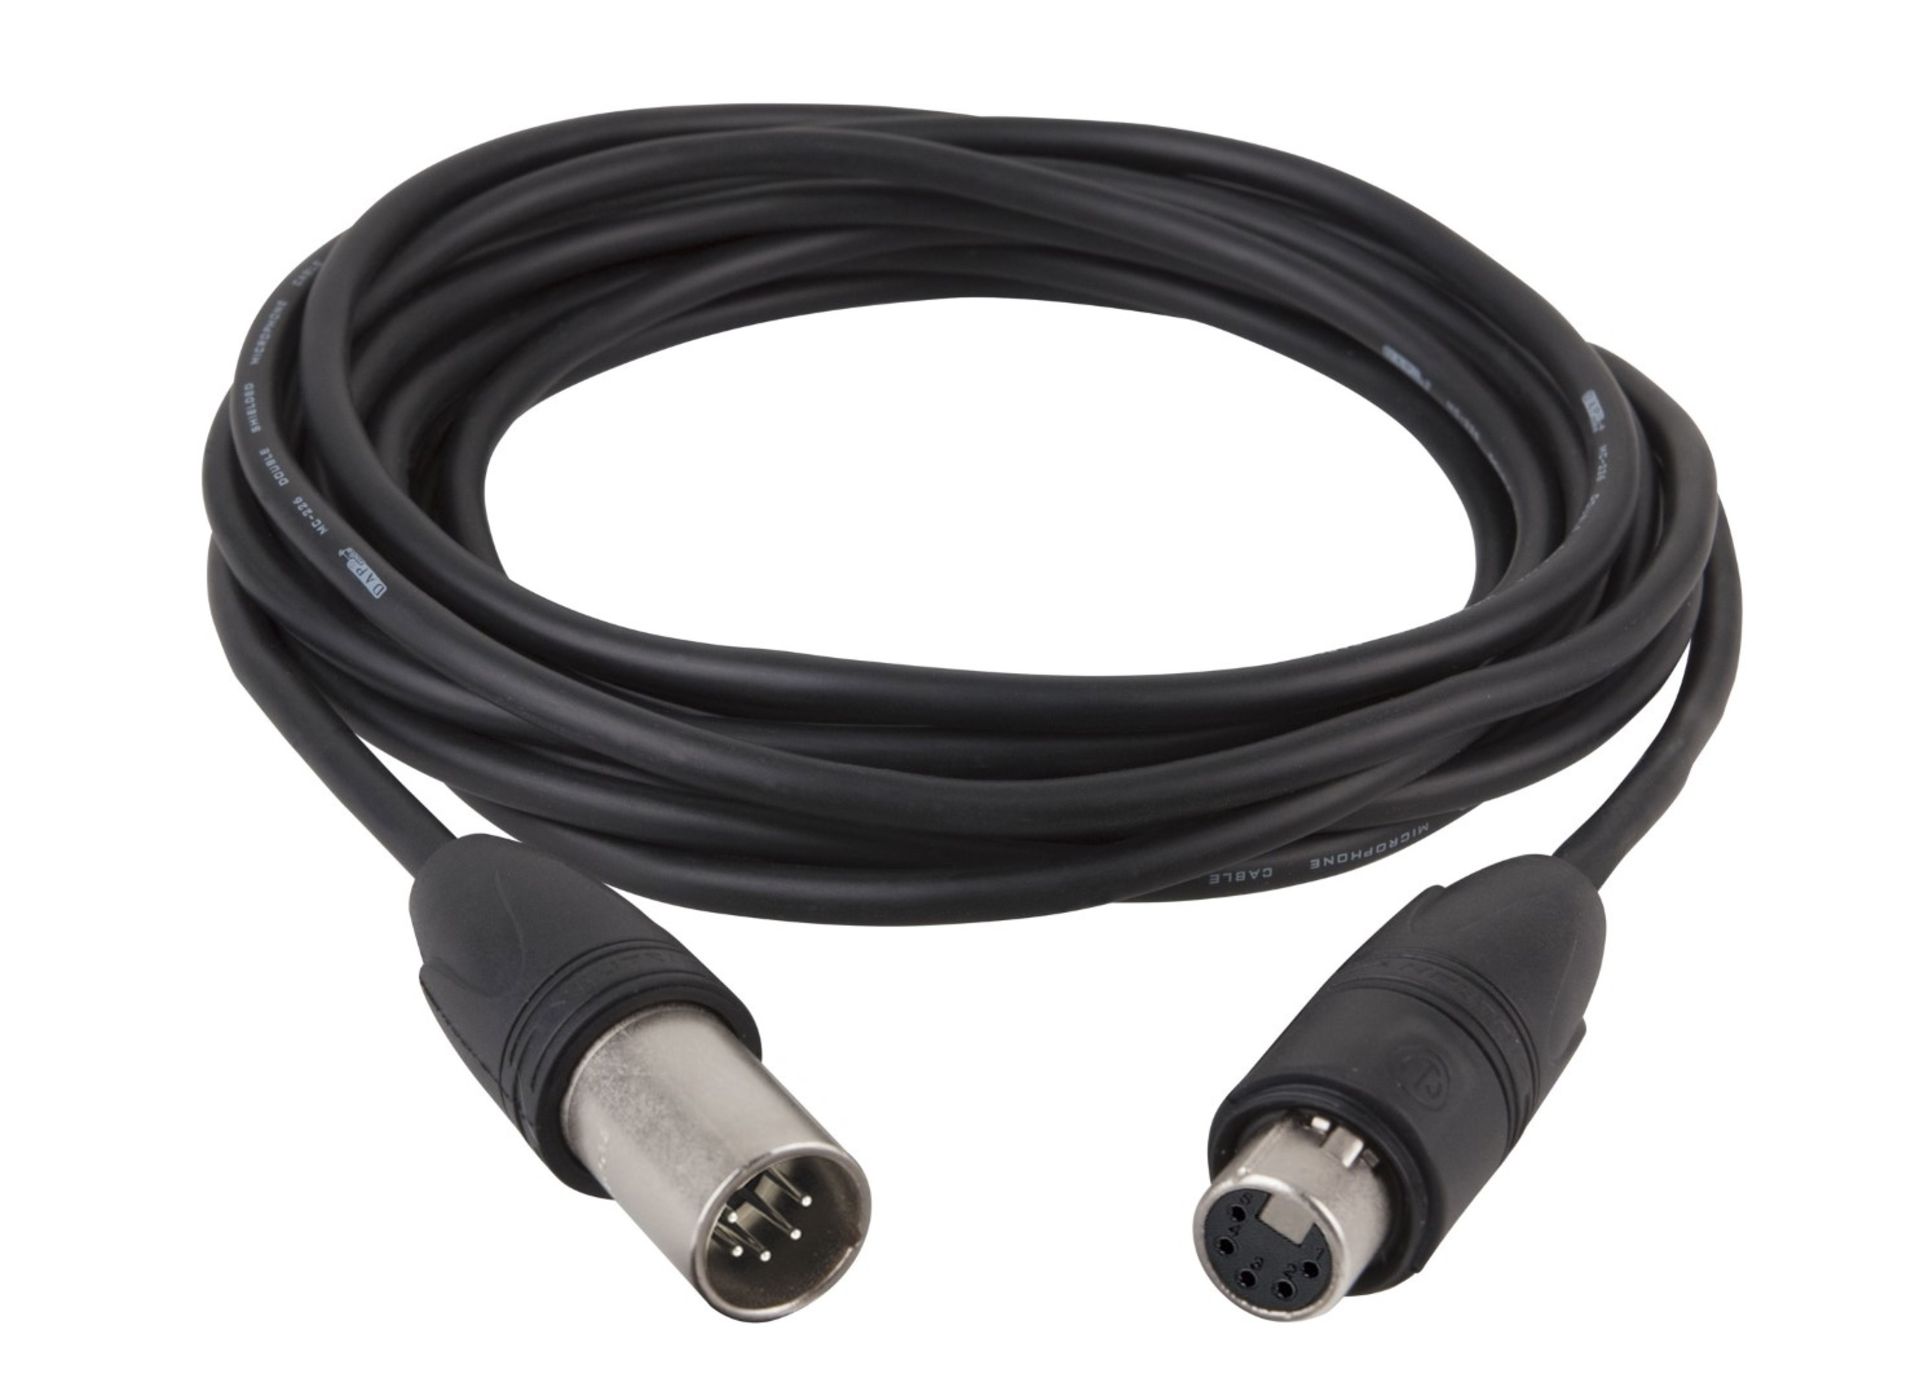 10 x DMX 10-Metre, 5-Pin Cables - New / Unused Stock - Ref: 501 - CL581 - Location: Altrincham WA14